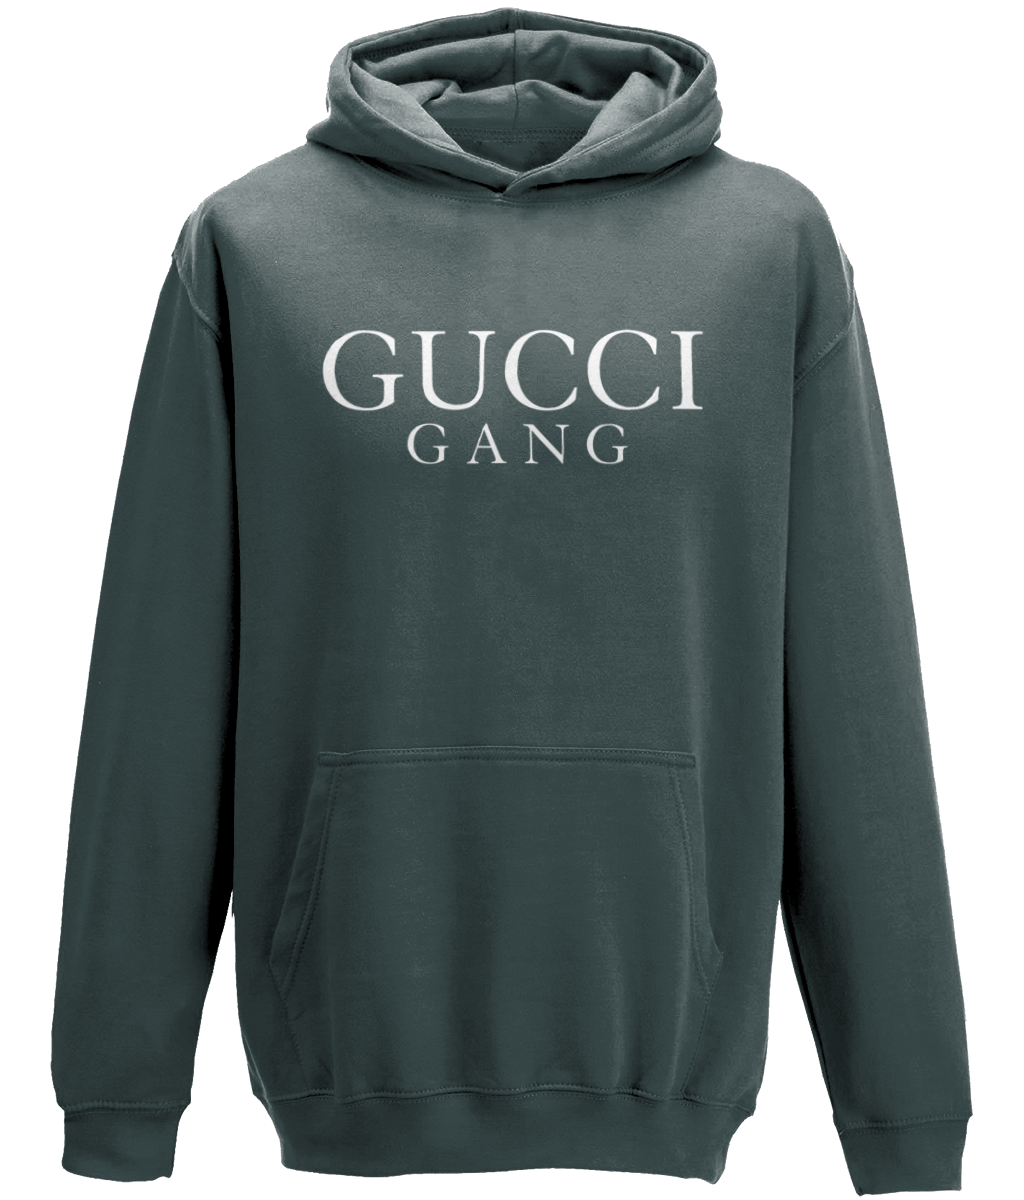 gucci gang hoodie